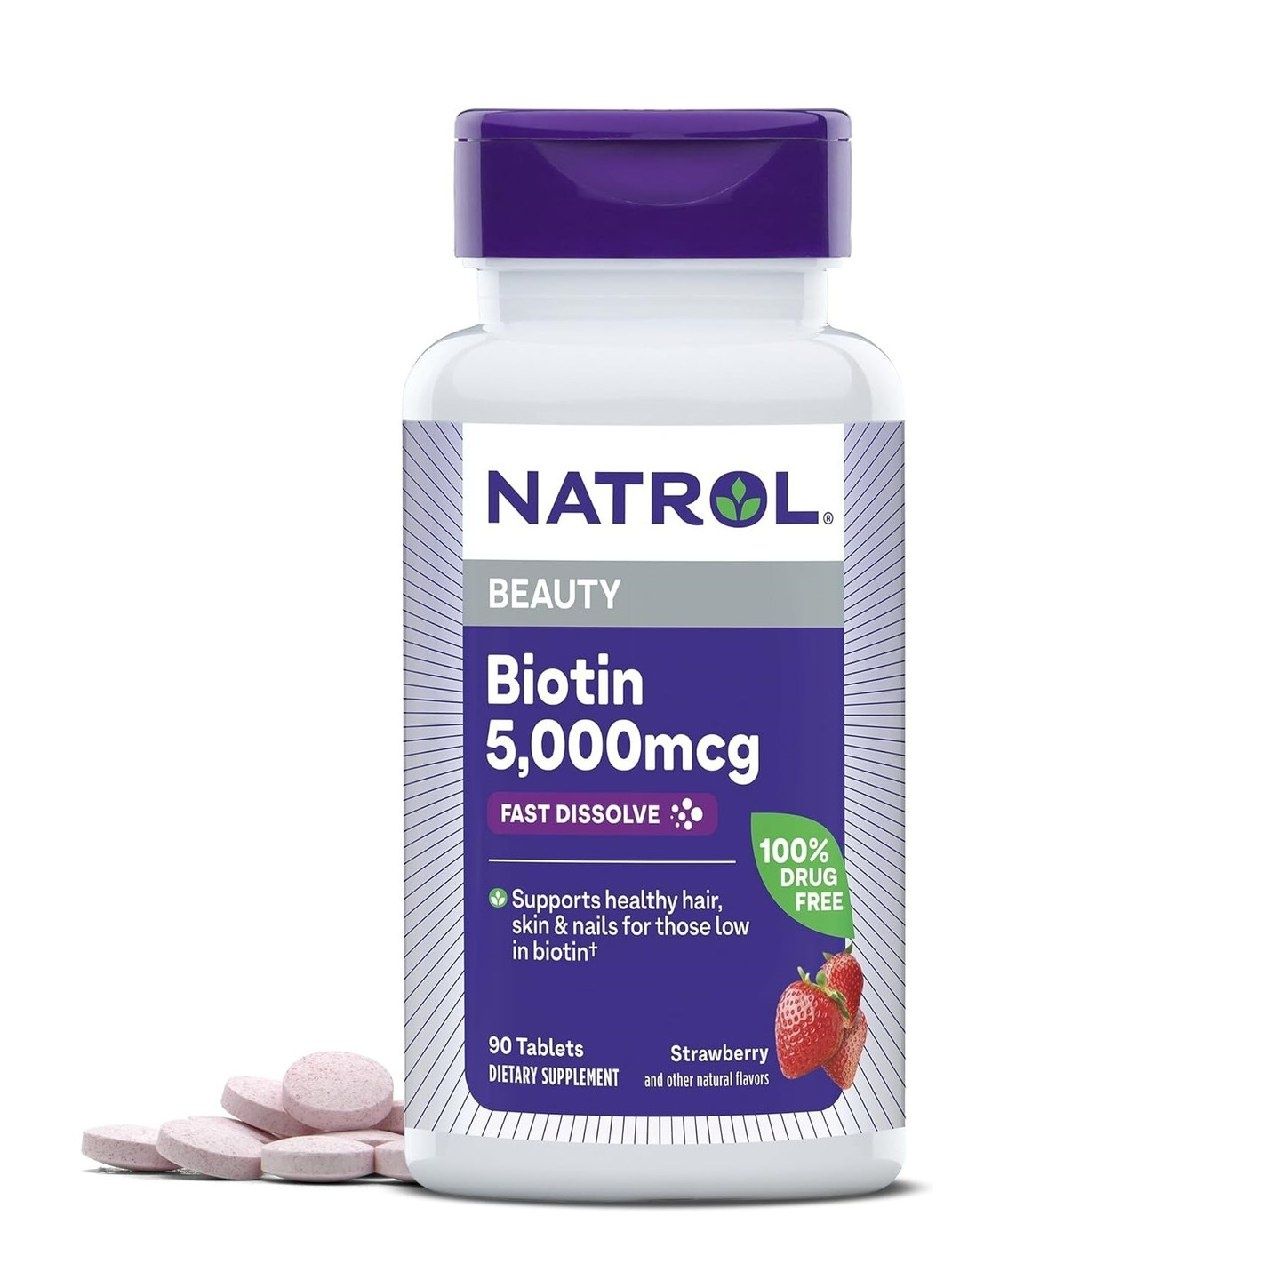 Natrol Биотиновые косметические таблетки. Способствуют здоровью волос,